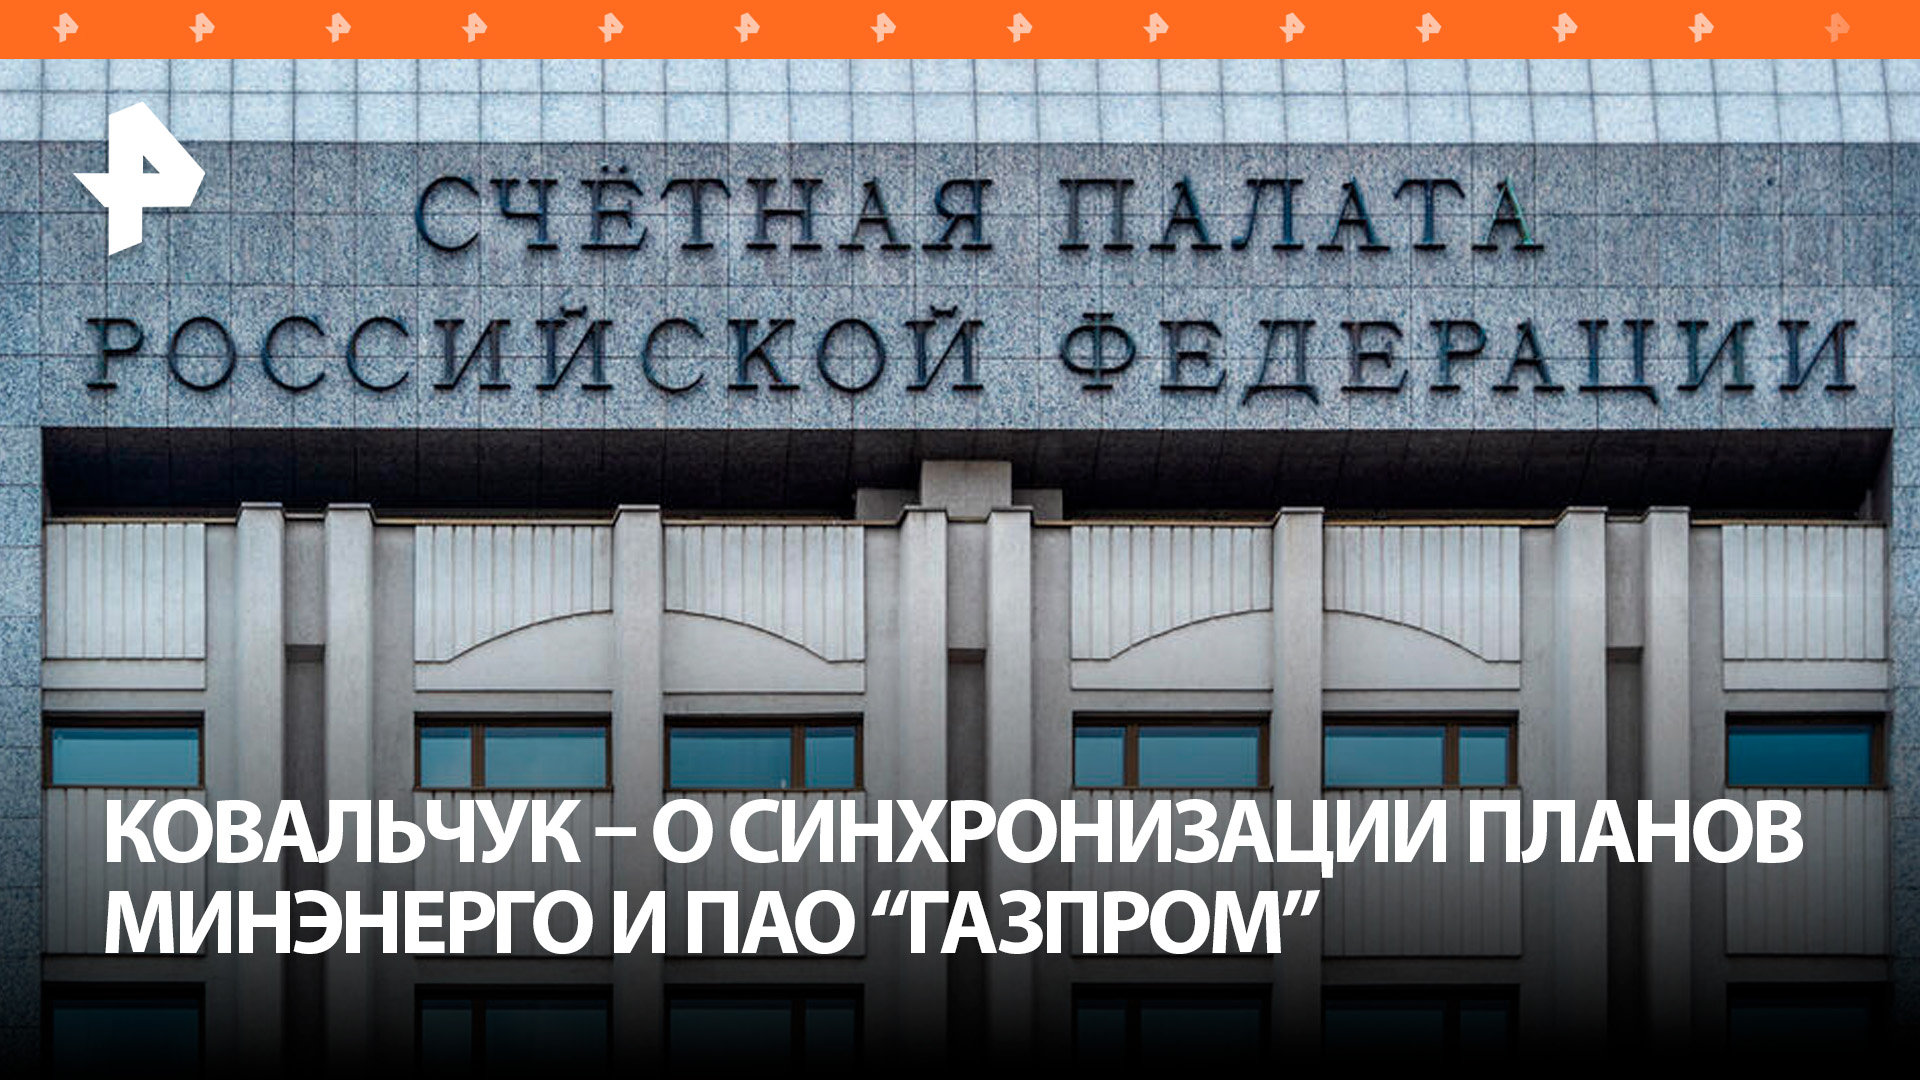 Счетная палата порекомендовала синхронизацию планов Минэнерго и ПАО "Газпром" по газификации